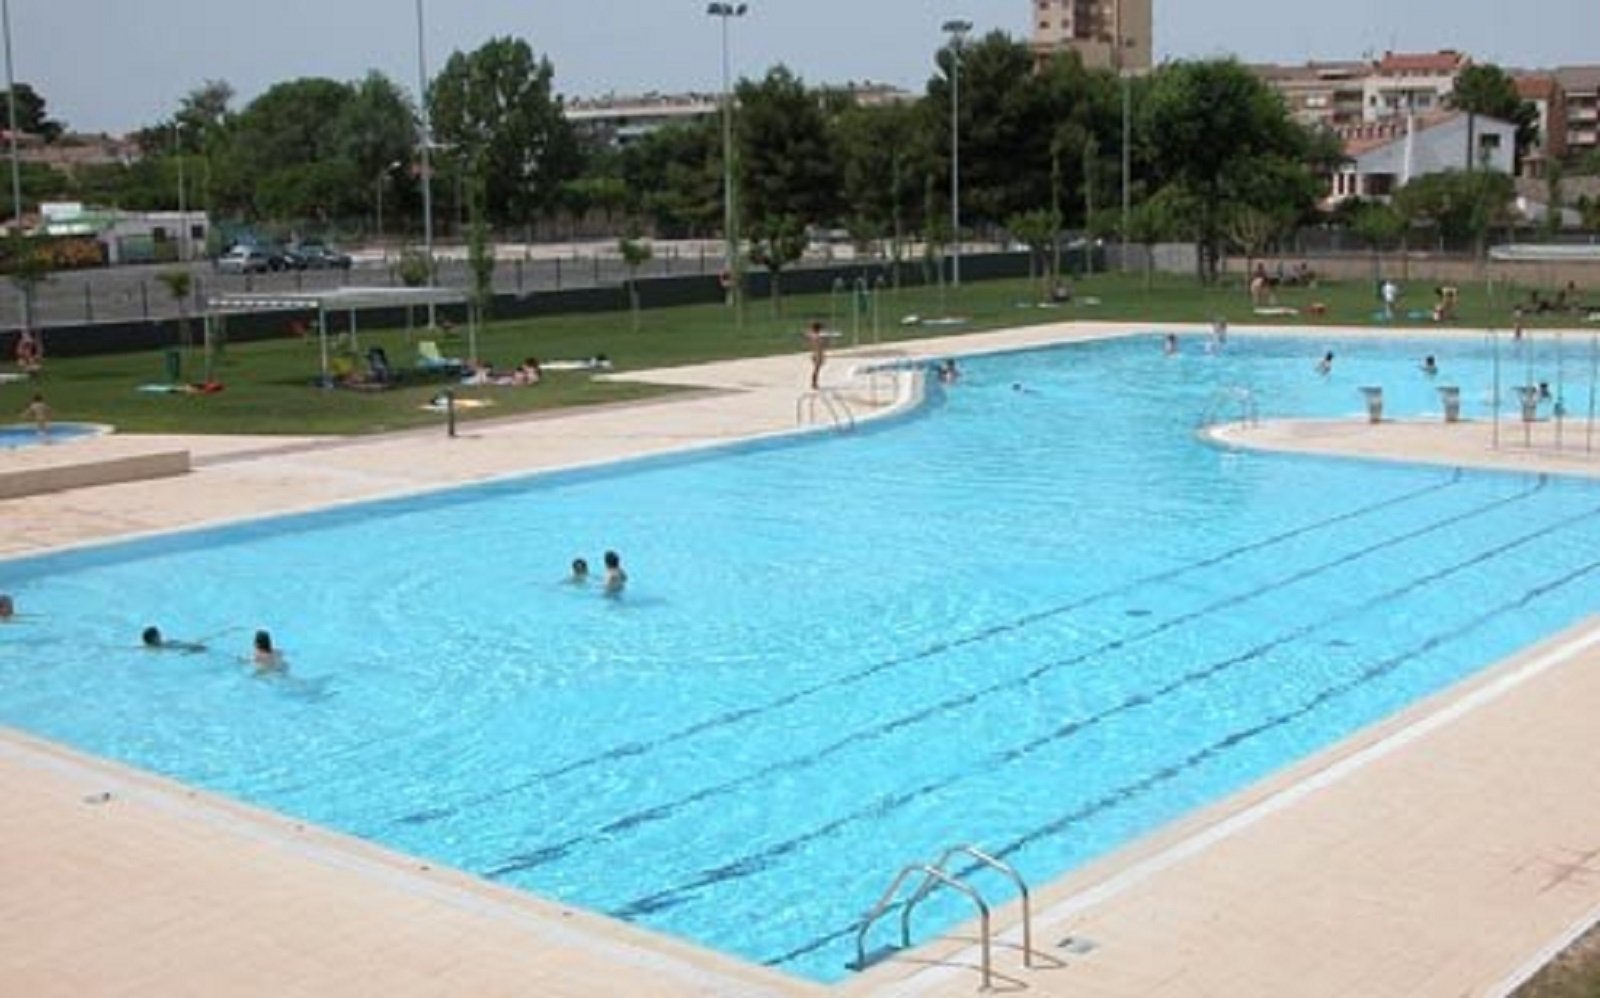 Un niño de 6 años muere ahogado en la piscina municipal de Tàrrega